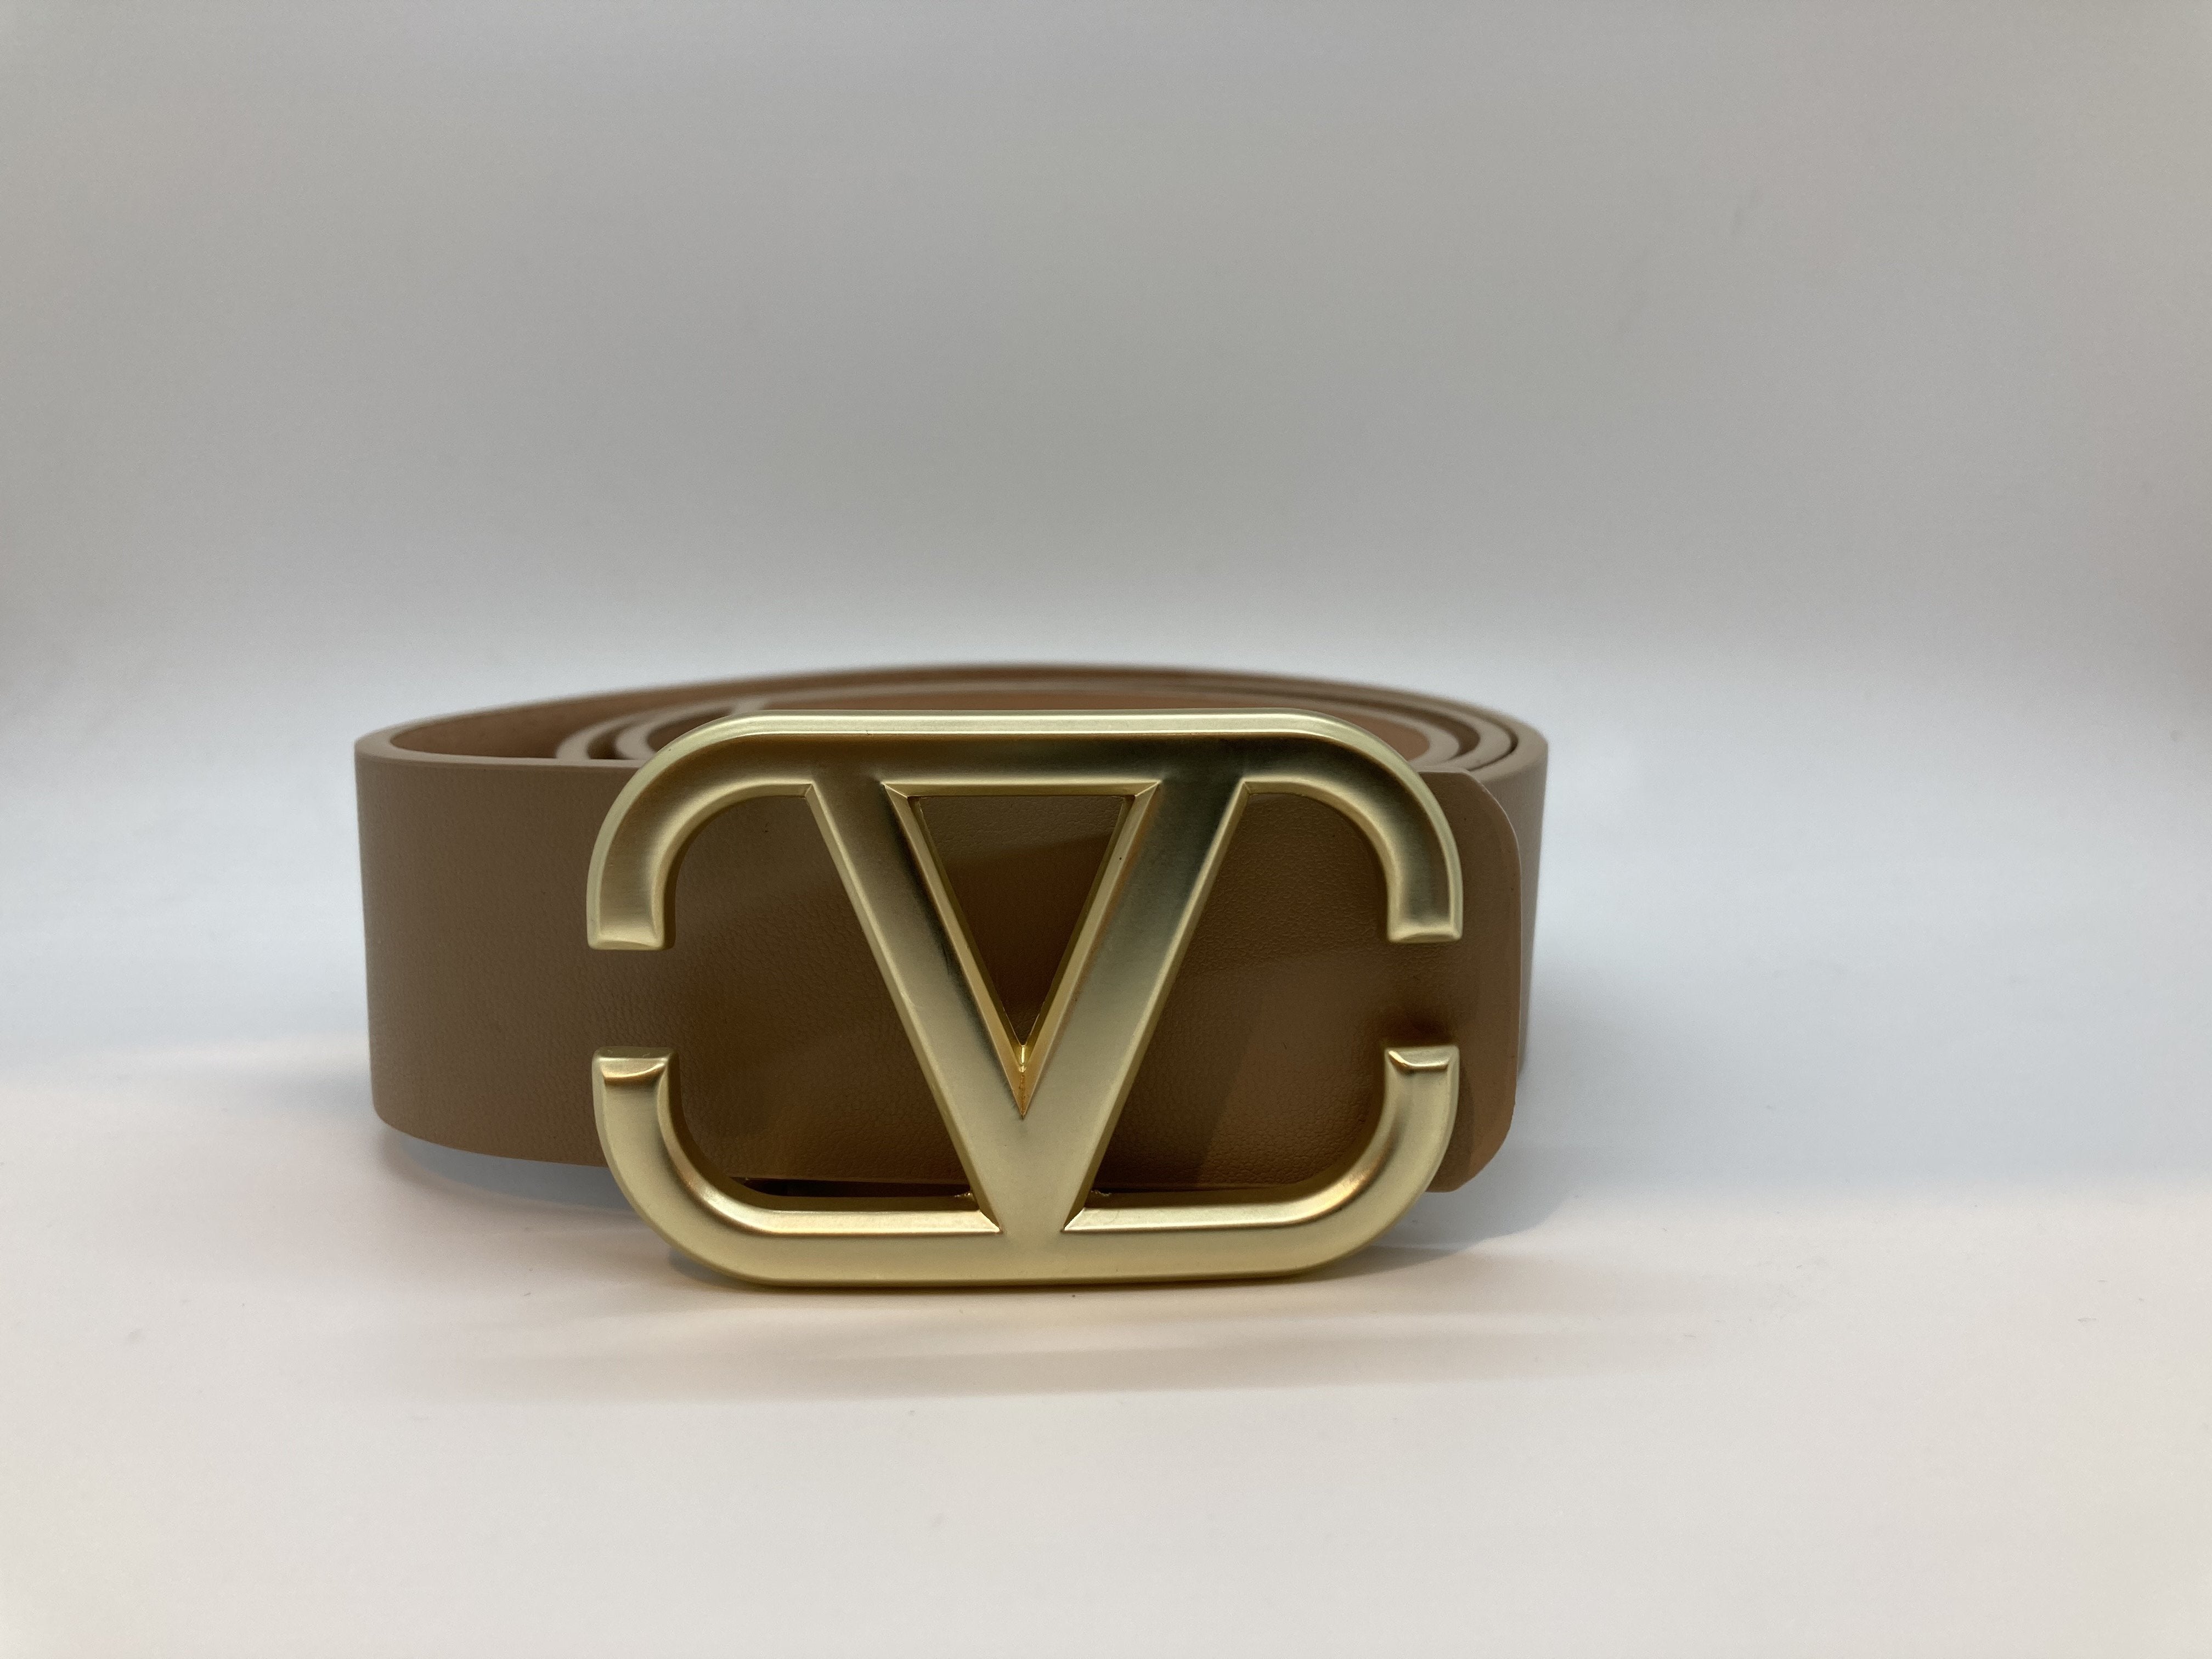 V fashion belt